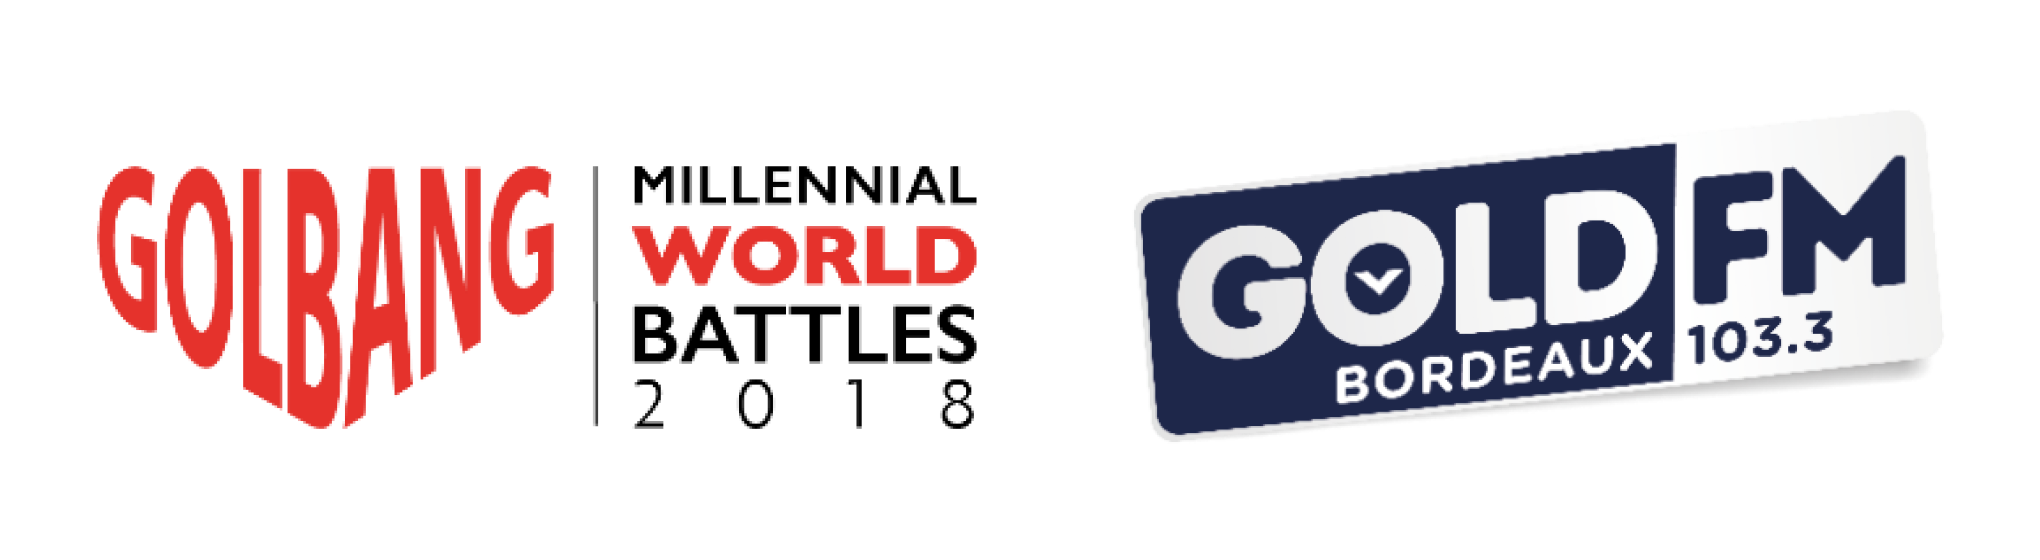 Gold FM devient partenaire des Millennial World Battles